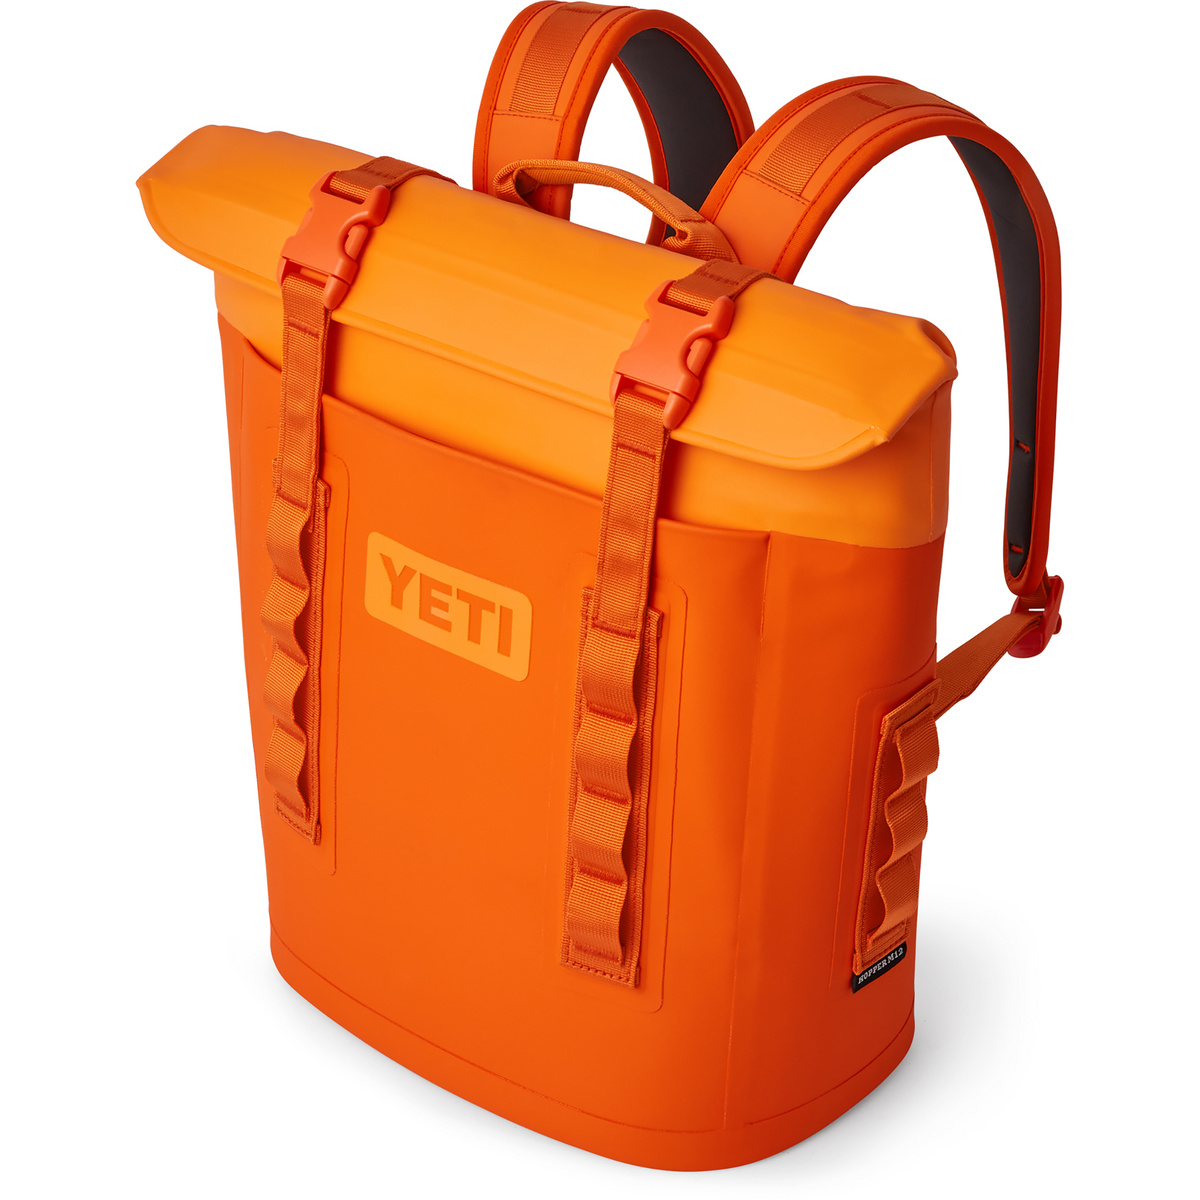 Yeti Coolers Hopper Backpack M12 Kühltasche von Yeti Coolers